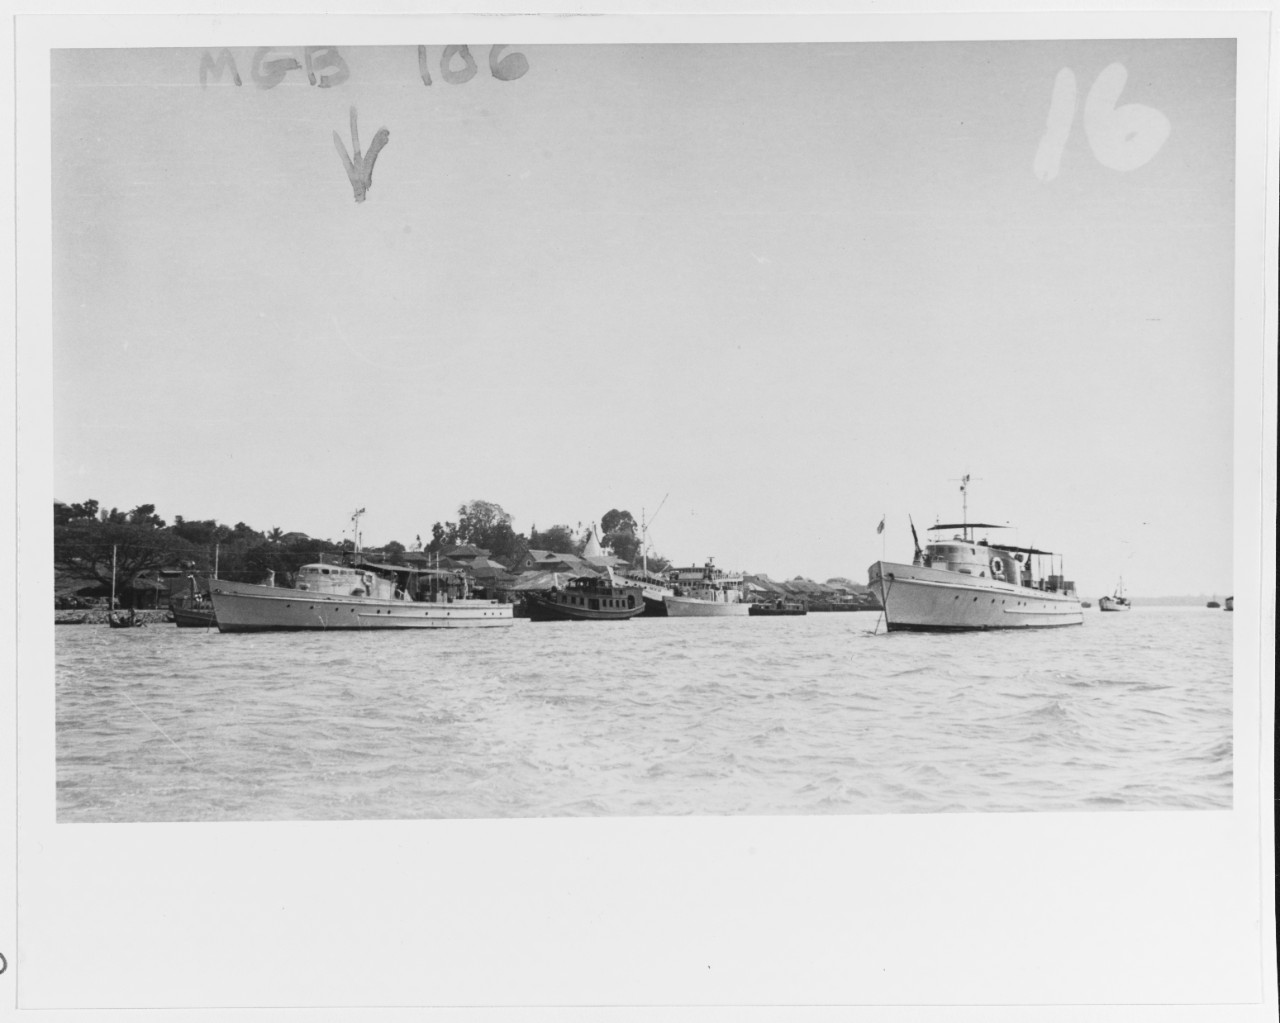 Burmese Navy patrol vessels in 1963